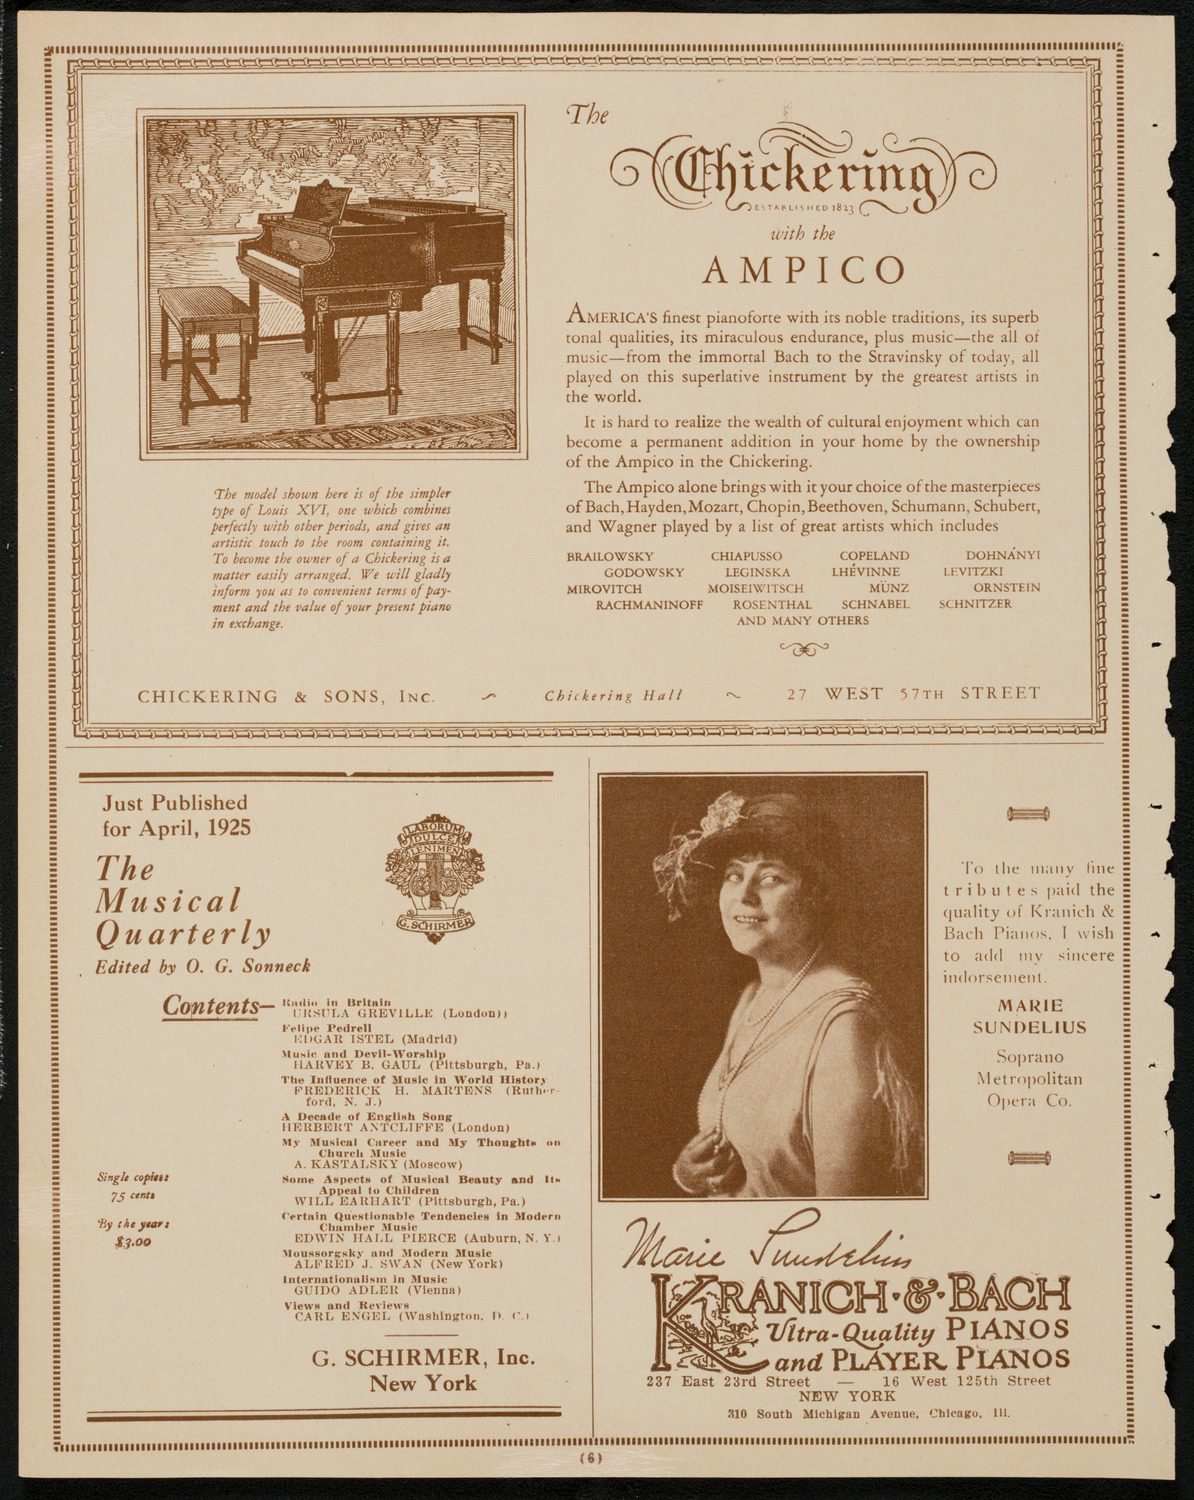 Boston Symphony Orchestra, April 9, 1925, program page 6